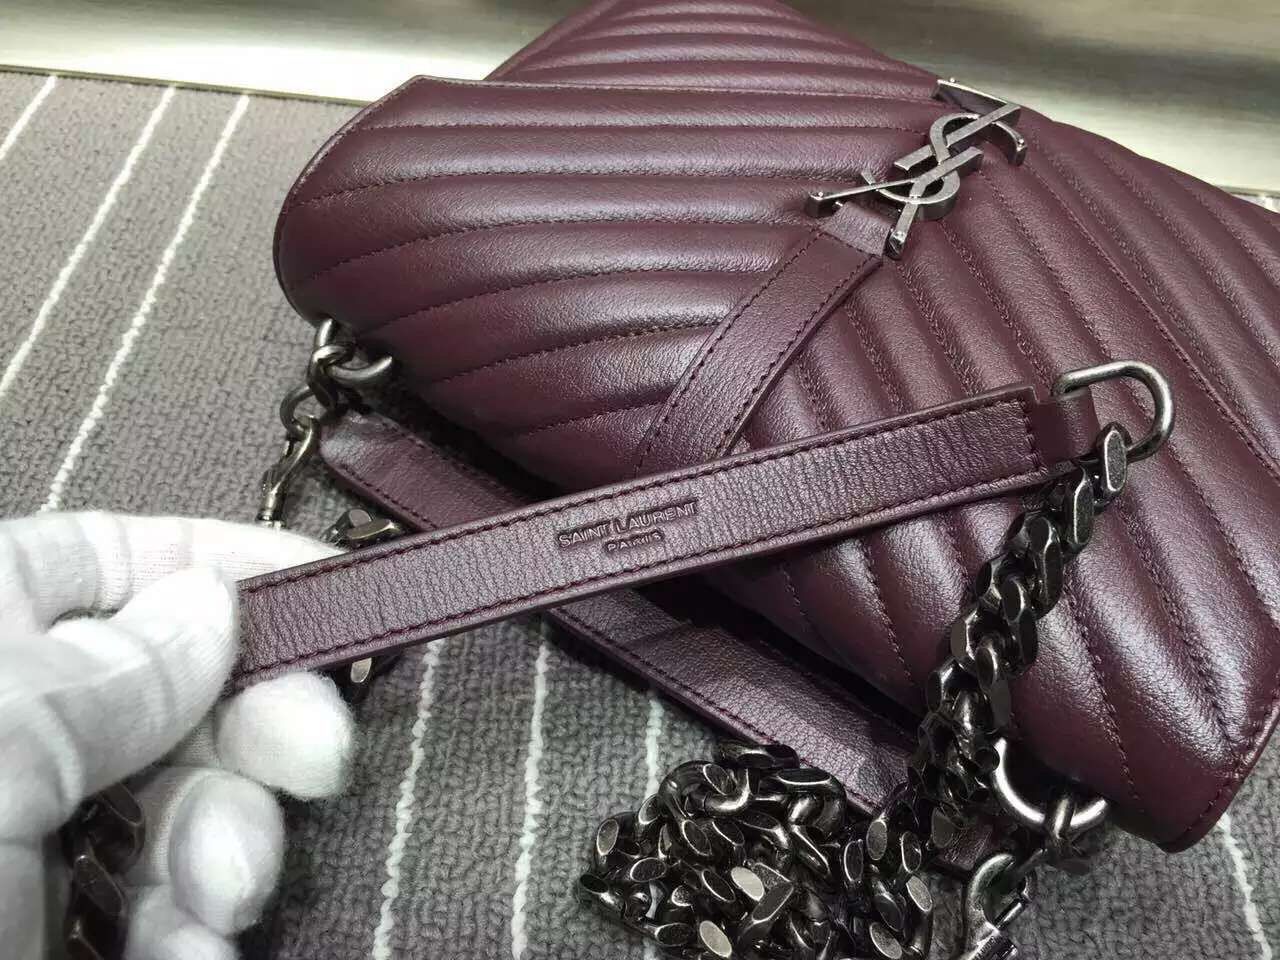 Yves Saint Laurent Messenger Bag  Origianl Leather YSL0338 Burgundy